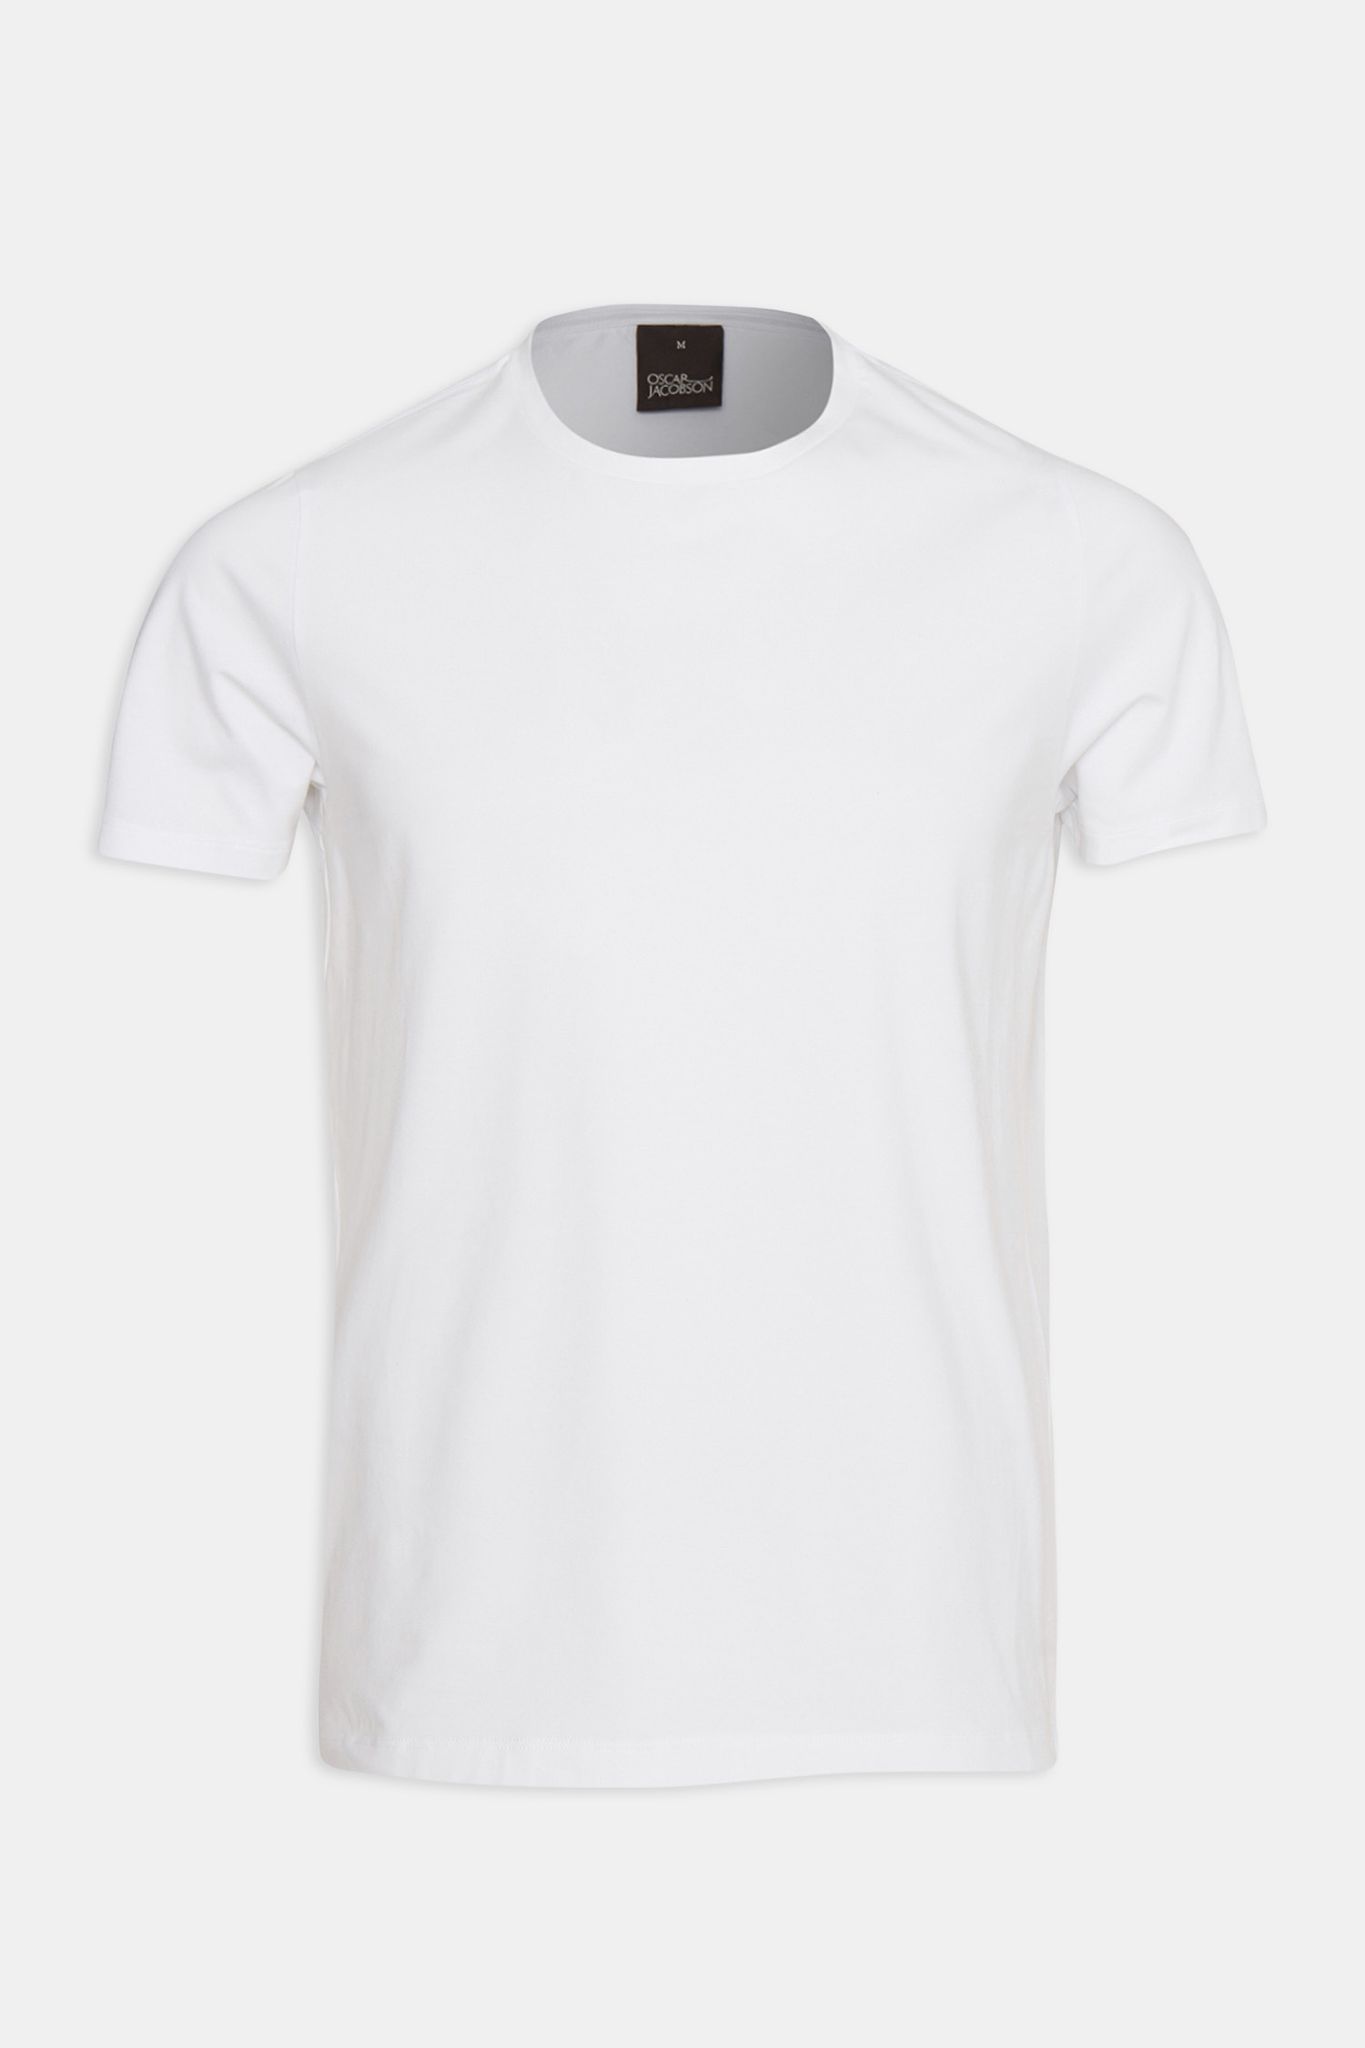 oscar-jacobson_kyran-t-shirt-ss_white_67893815_924_front